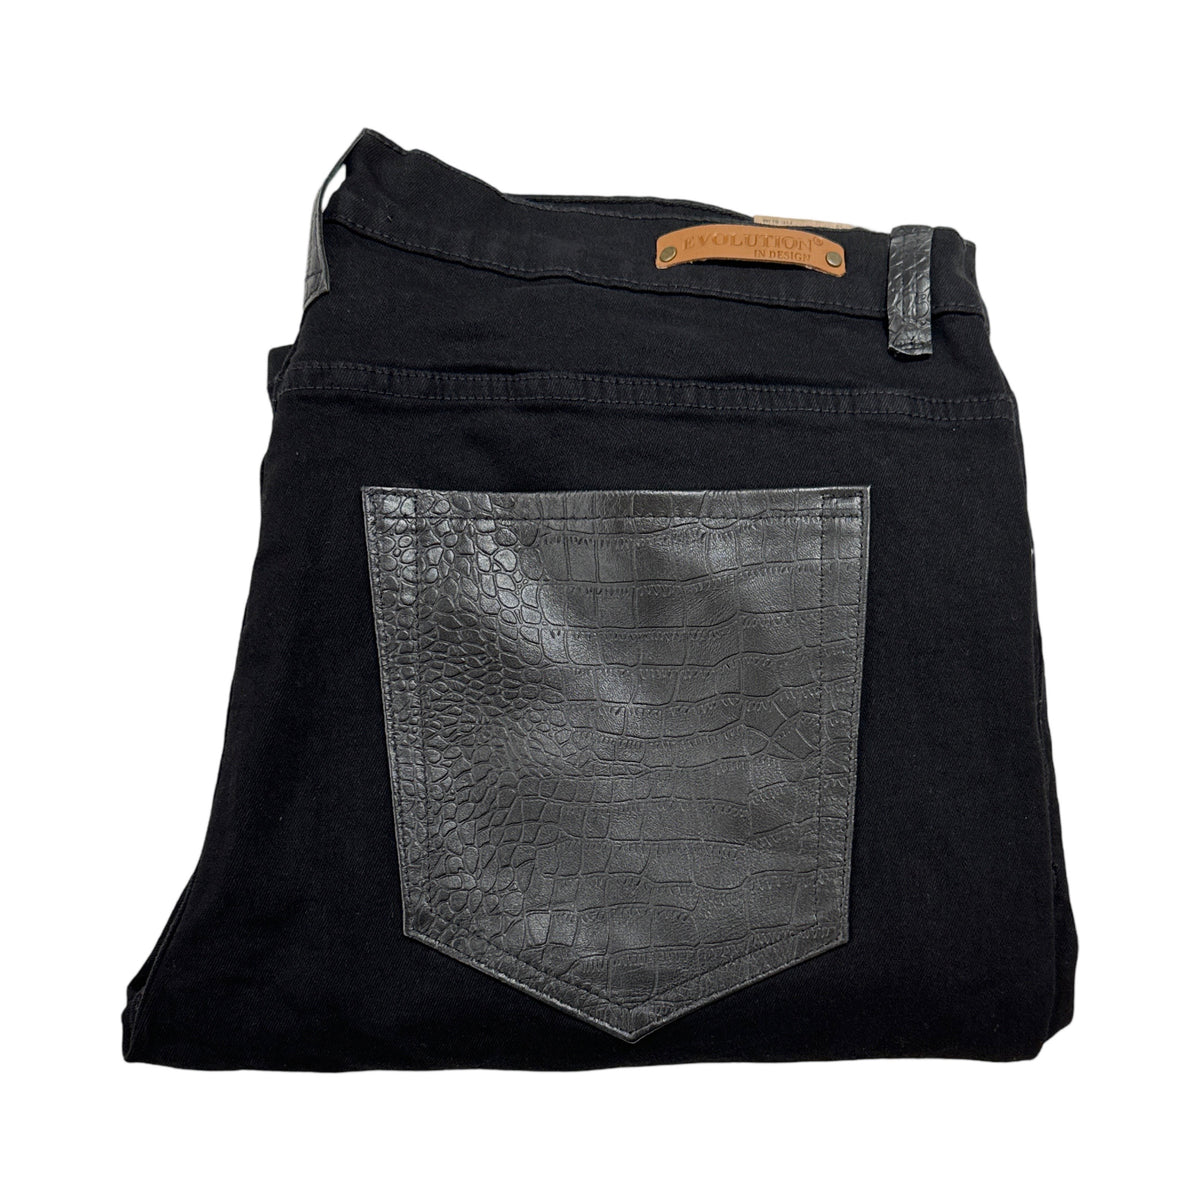 Kashani Denim Cargo Jeans w/ Black Embossed Alligator Pockets - Dudes Boutique